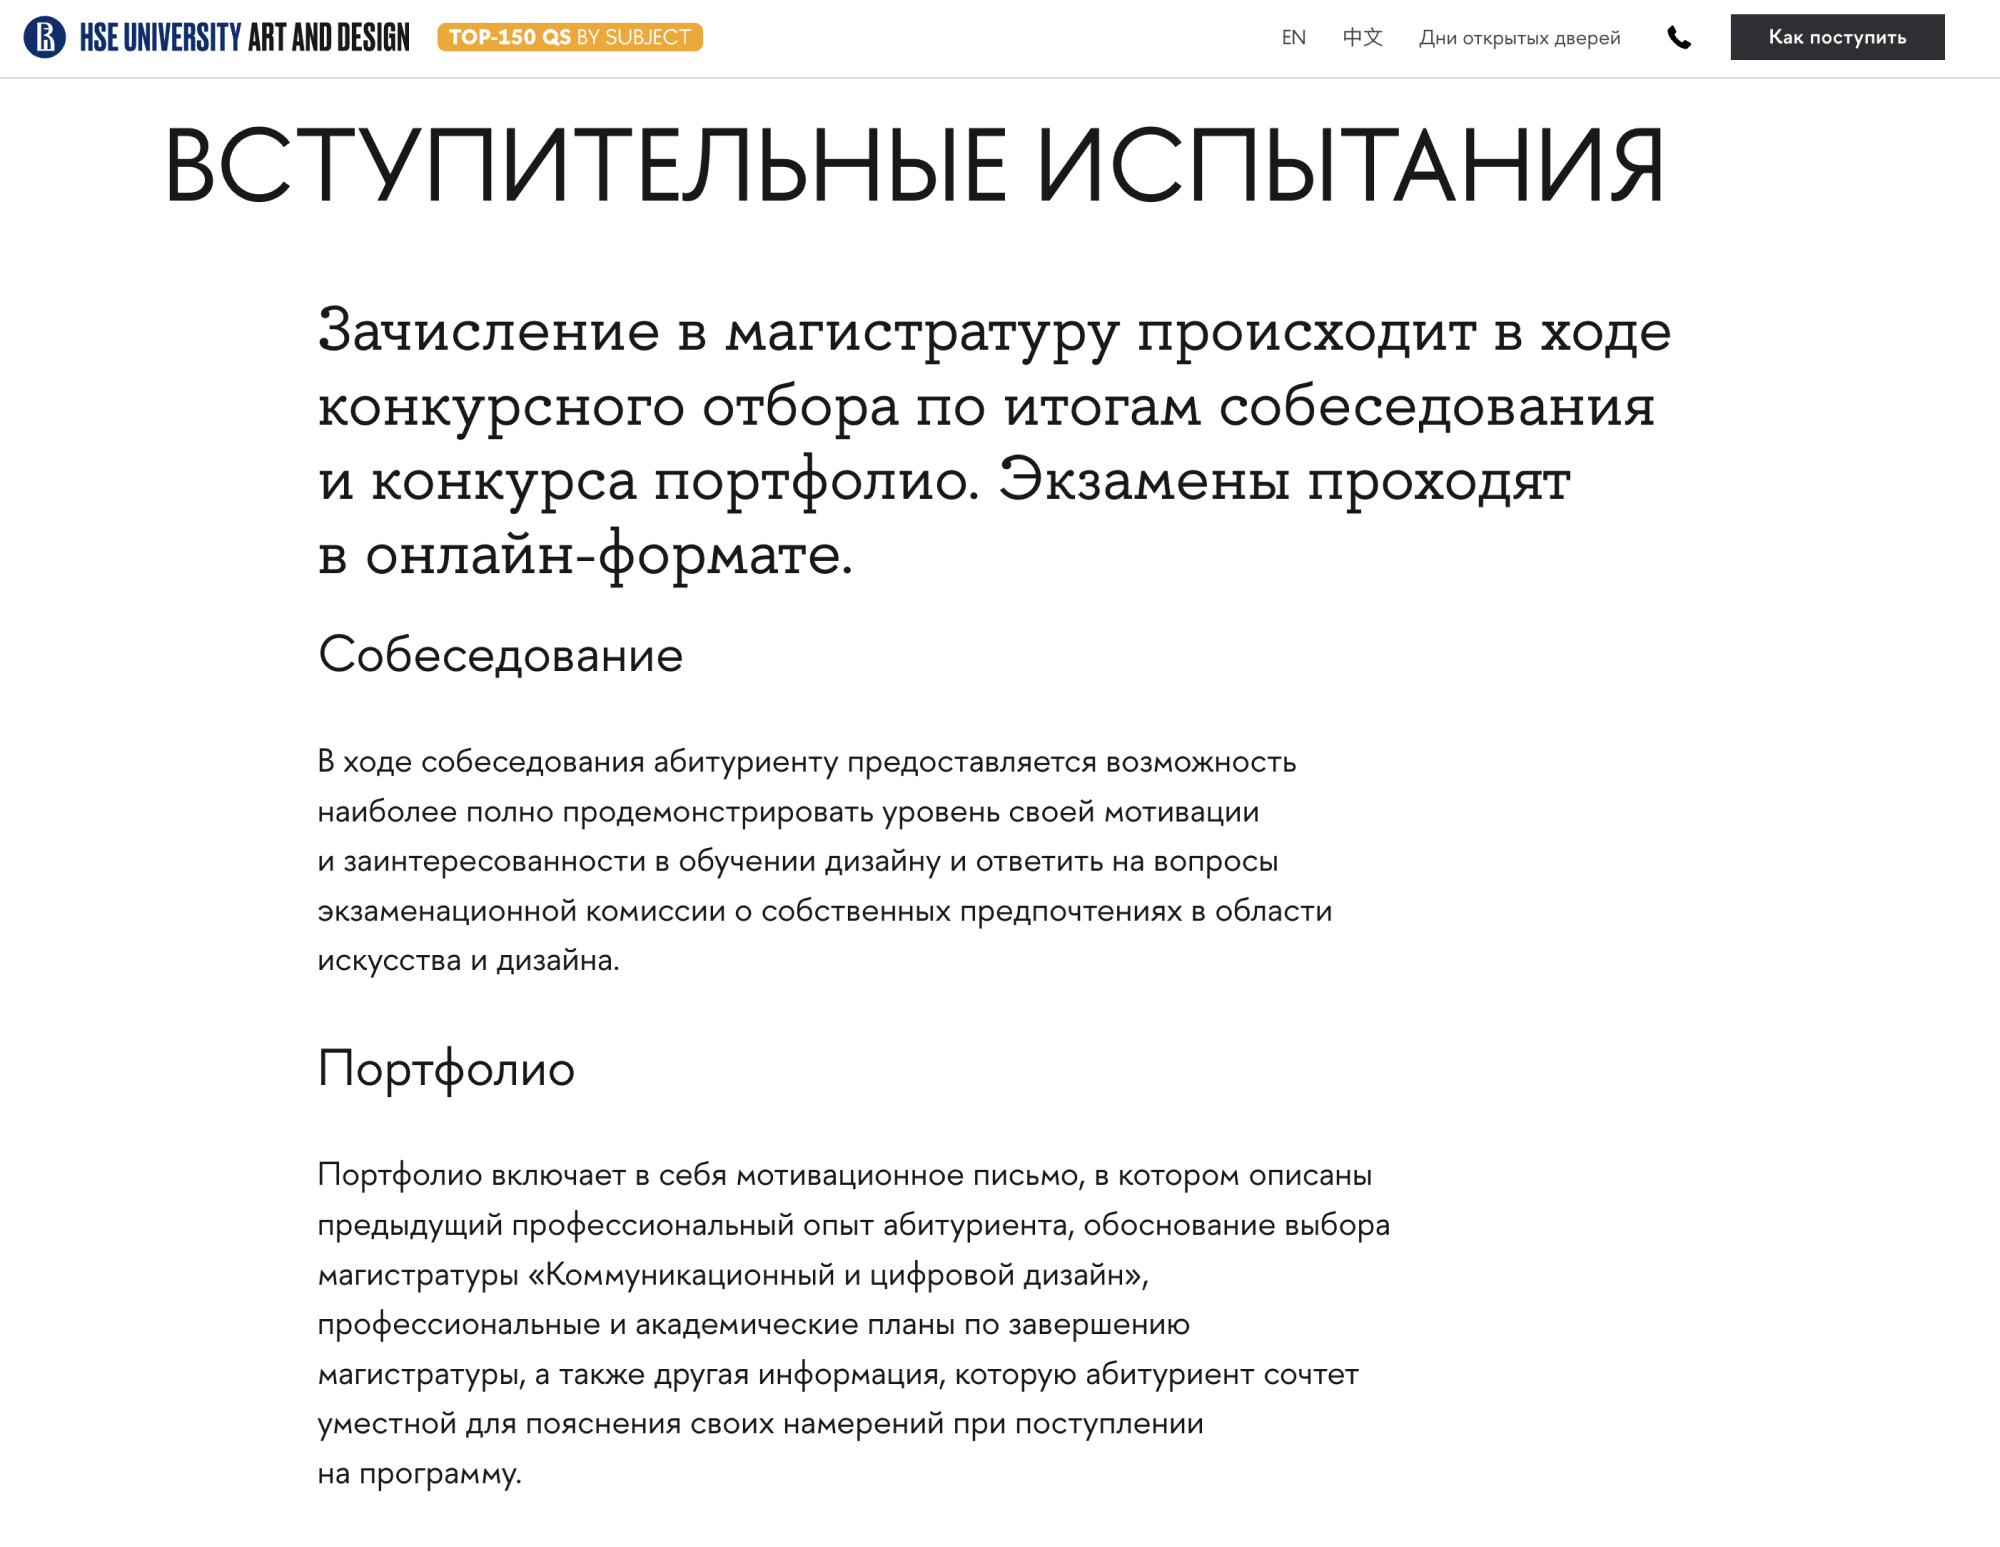 Самая настоящая магистратура со вступительными экзаменами. Источник: design.hse.ru